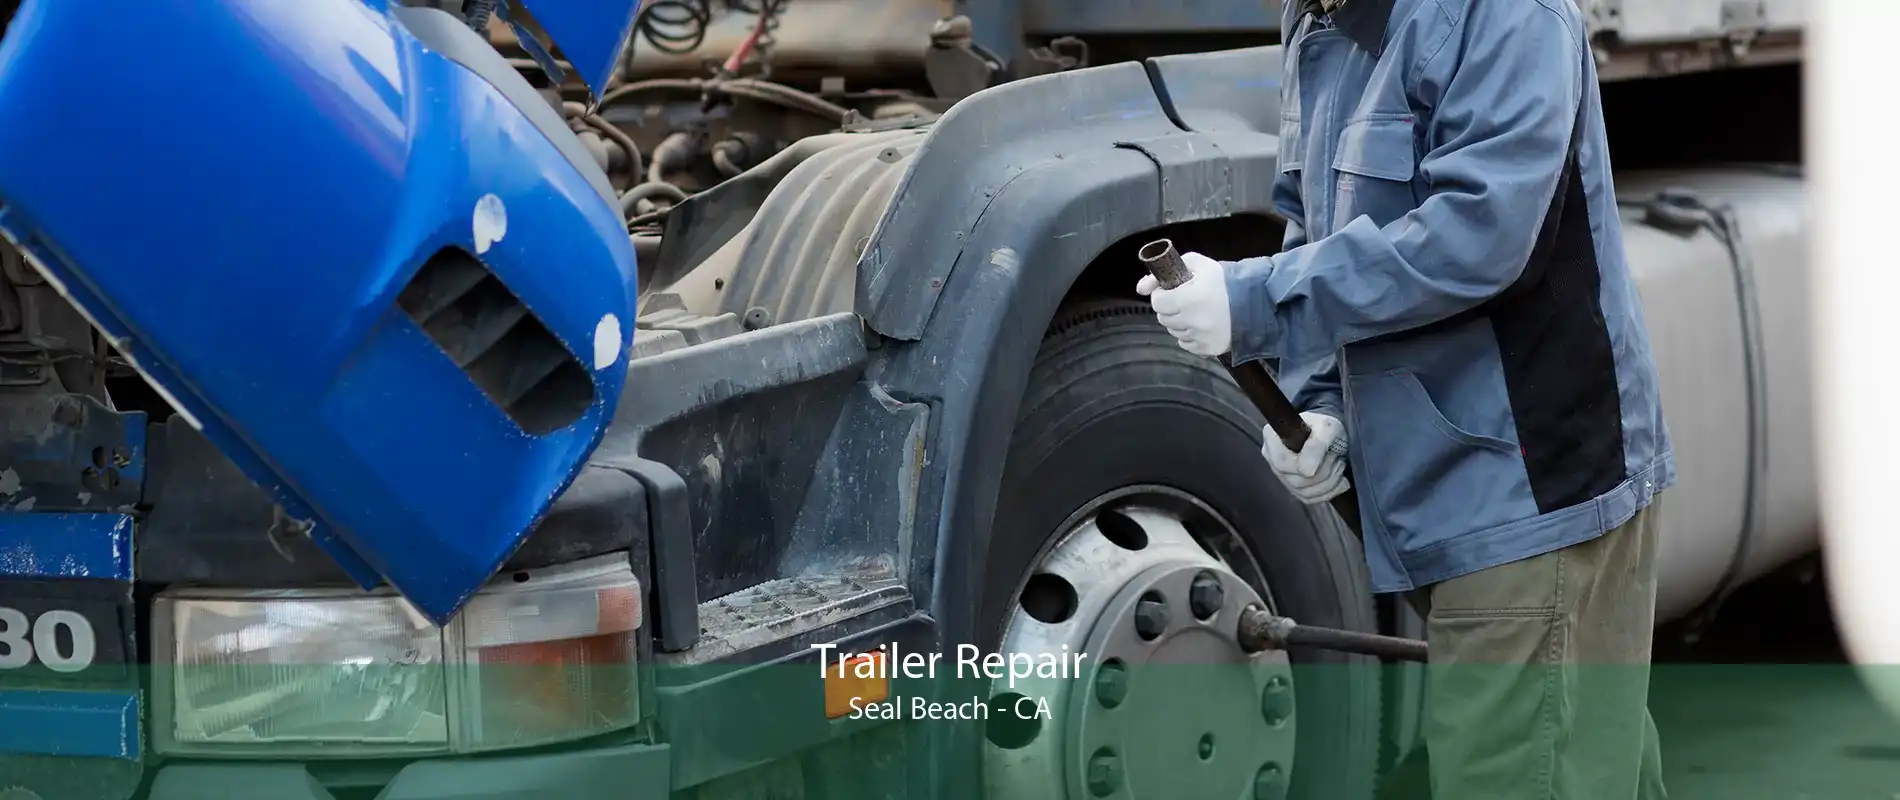 Trailer Repair Seal Beach - CA